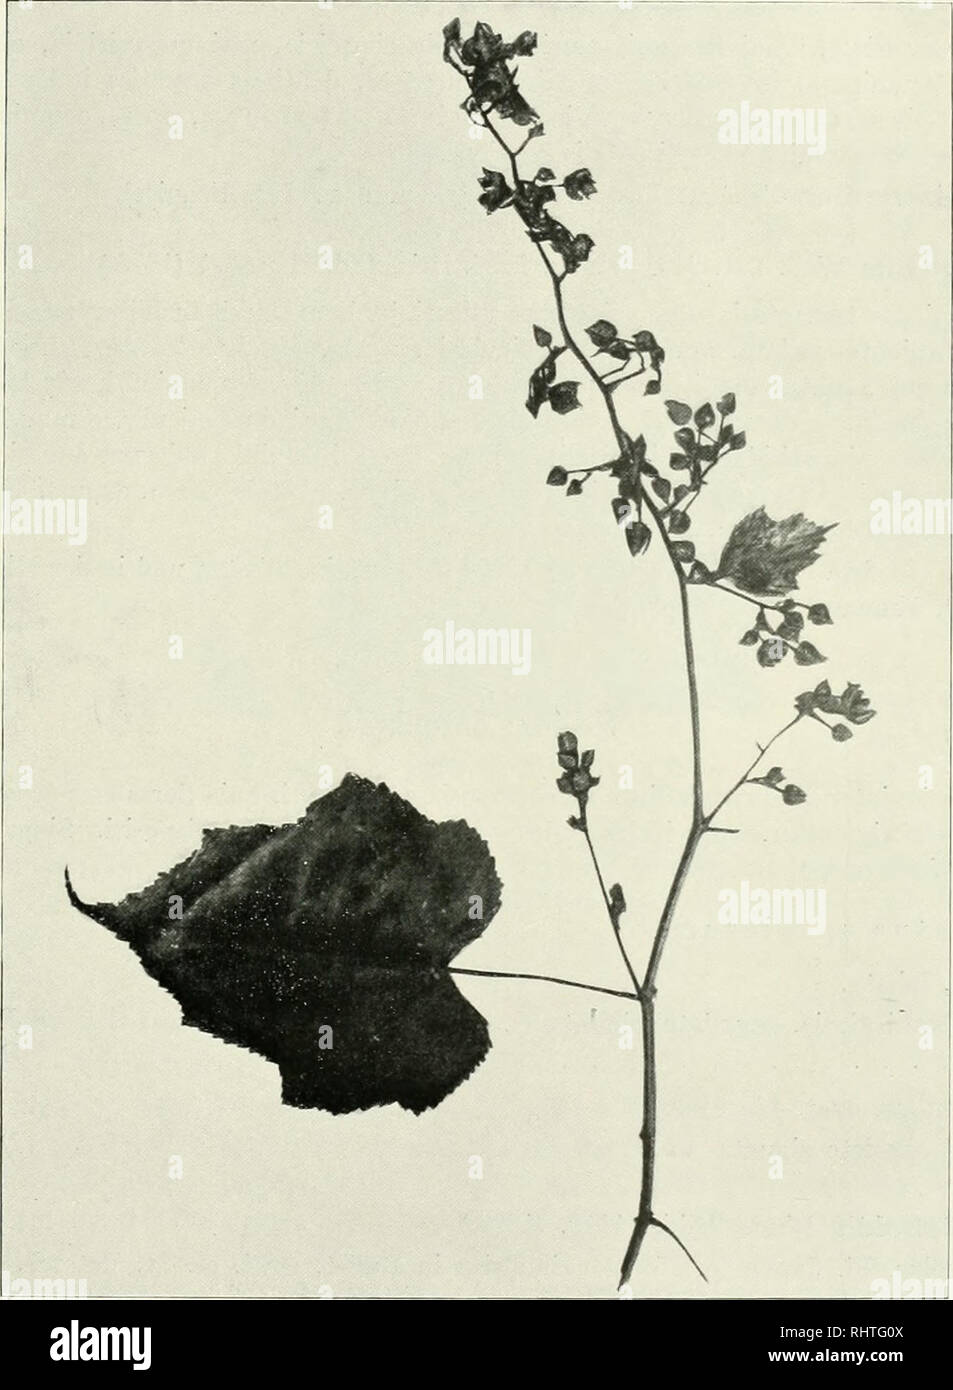 . Bibliotheca botanica. Plants. — 109 — 137. R. lasiotrichos Pocke in Hb. Berol. Exs. Henry Chin. no. 9175. Frutex scandens; rami puberuli, glandulis sessilibus scabriusculi, villis longis densis patentibus aculeisque sparsis parvis reclinatis instructi. Folia longe (6—7 cm) petiolata, ambitu suborhicularia, diam.. Fig. 48. R. viscidus Pocke. 10—12 cm, sinu angusto cordata sat profunde quiuqueloba argute serrata, supra striguloso-pilosa, subtus molliter villosa vel subsericea; lobus terminalis ovatus, diam. 5:4 cm, acuminatus. Stipulae pinnato- pectinatae, cadiicae. Flores inferiores singuli v Stock Photo